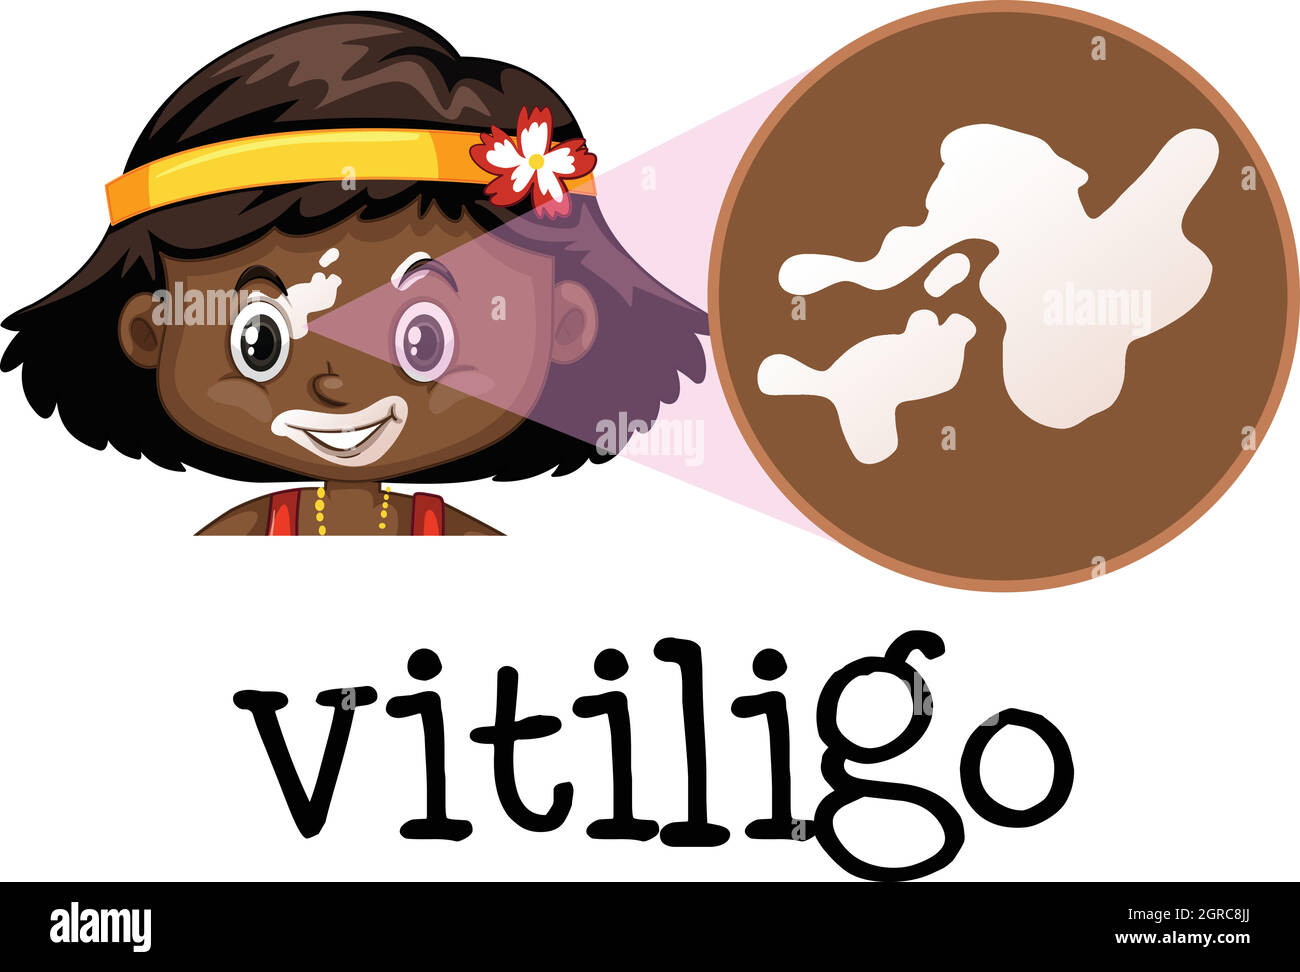 Educazione medica umana di Vitiligo Illustrazione Vettoriale